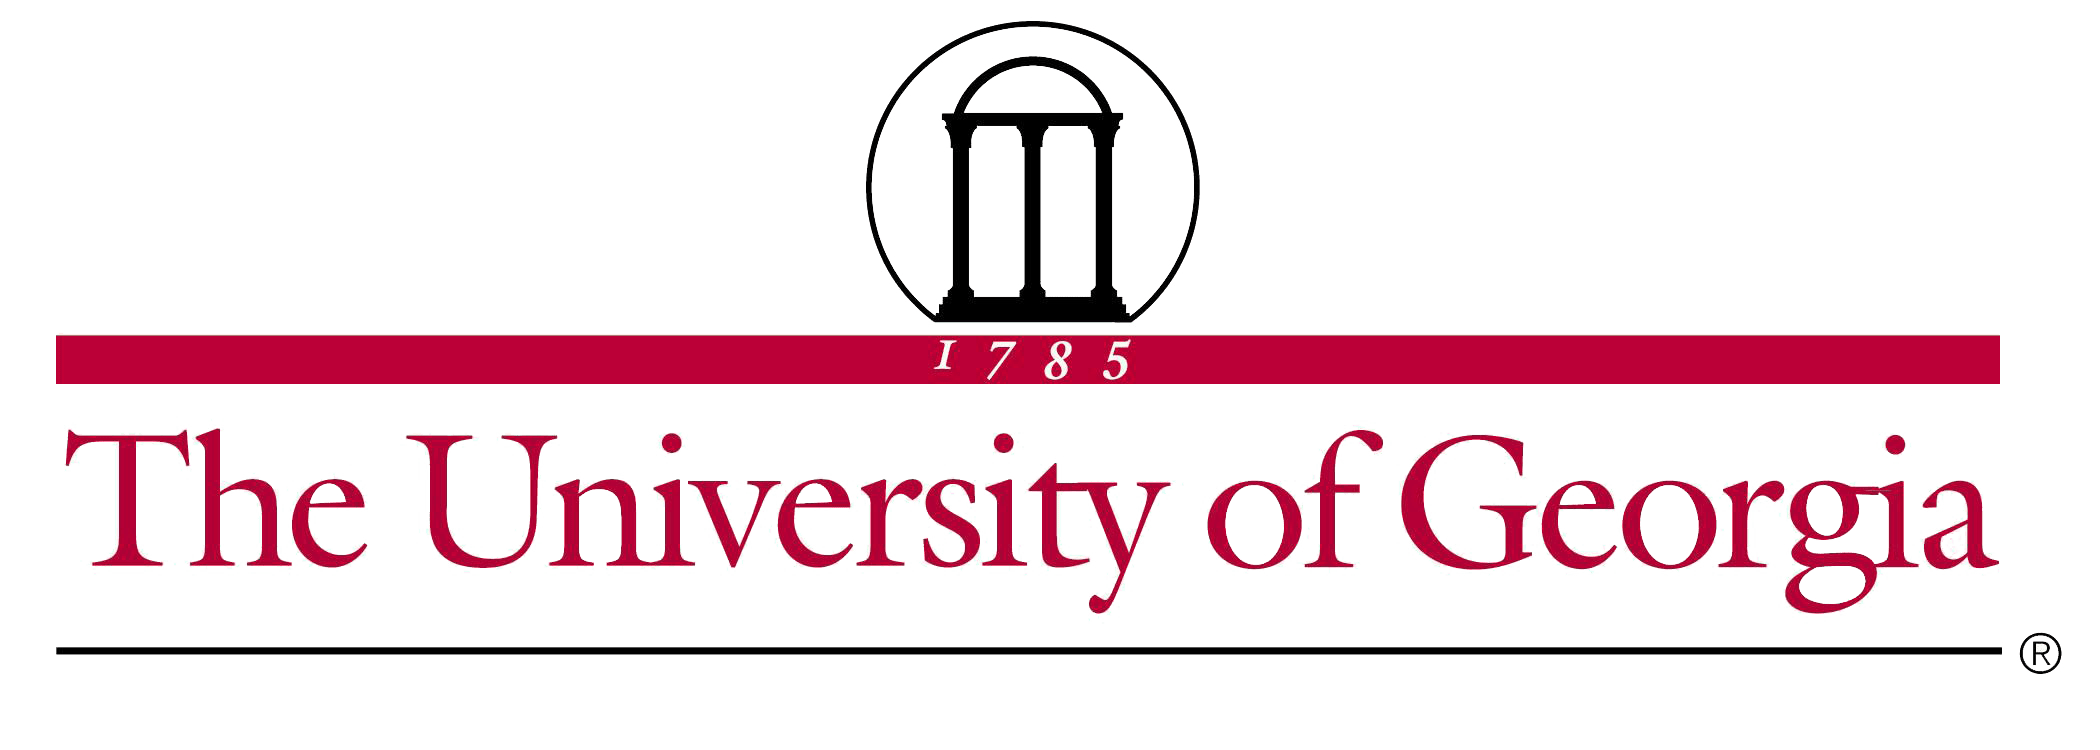 University of Georgia